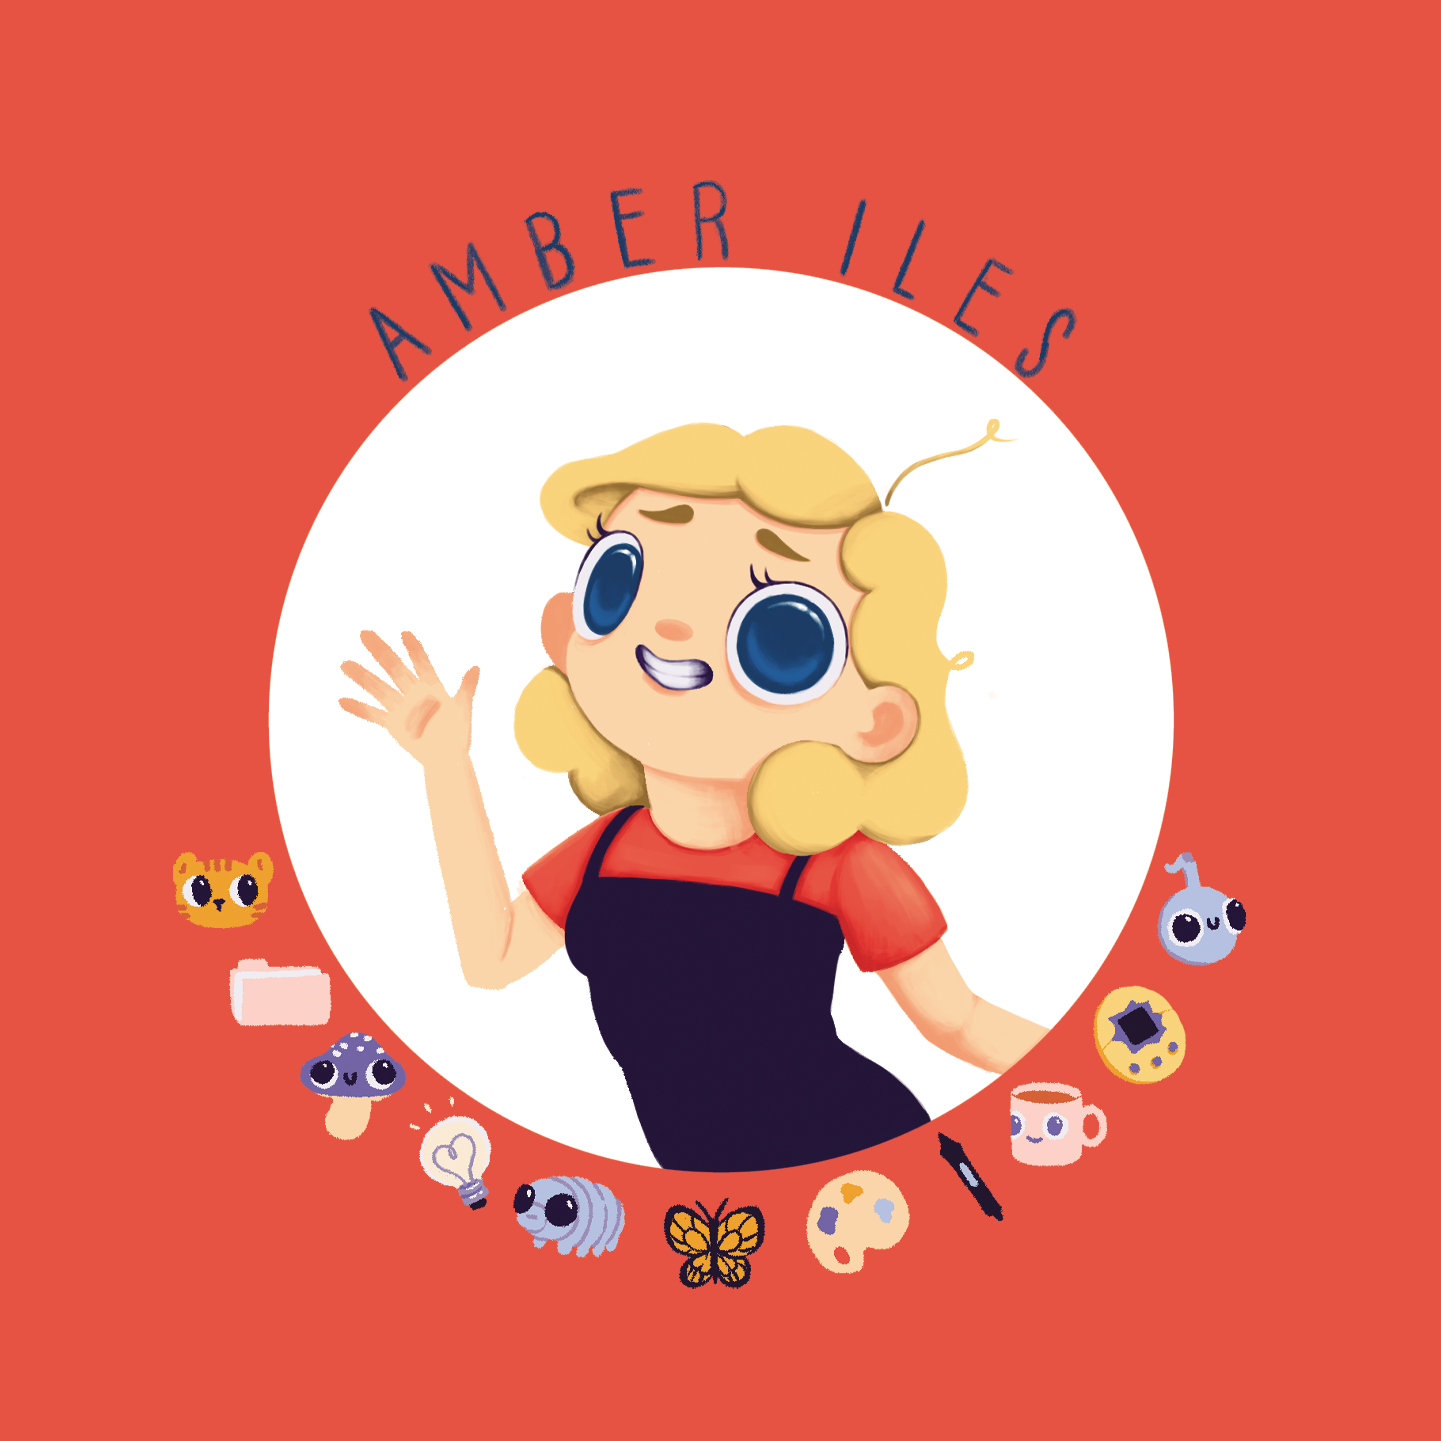 Amber Iles